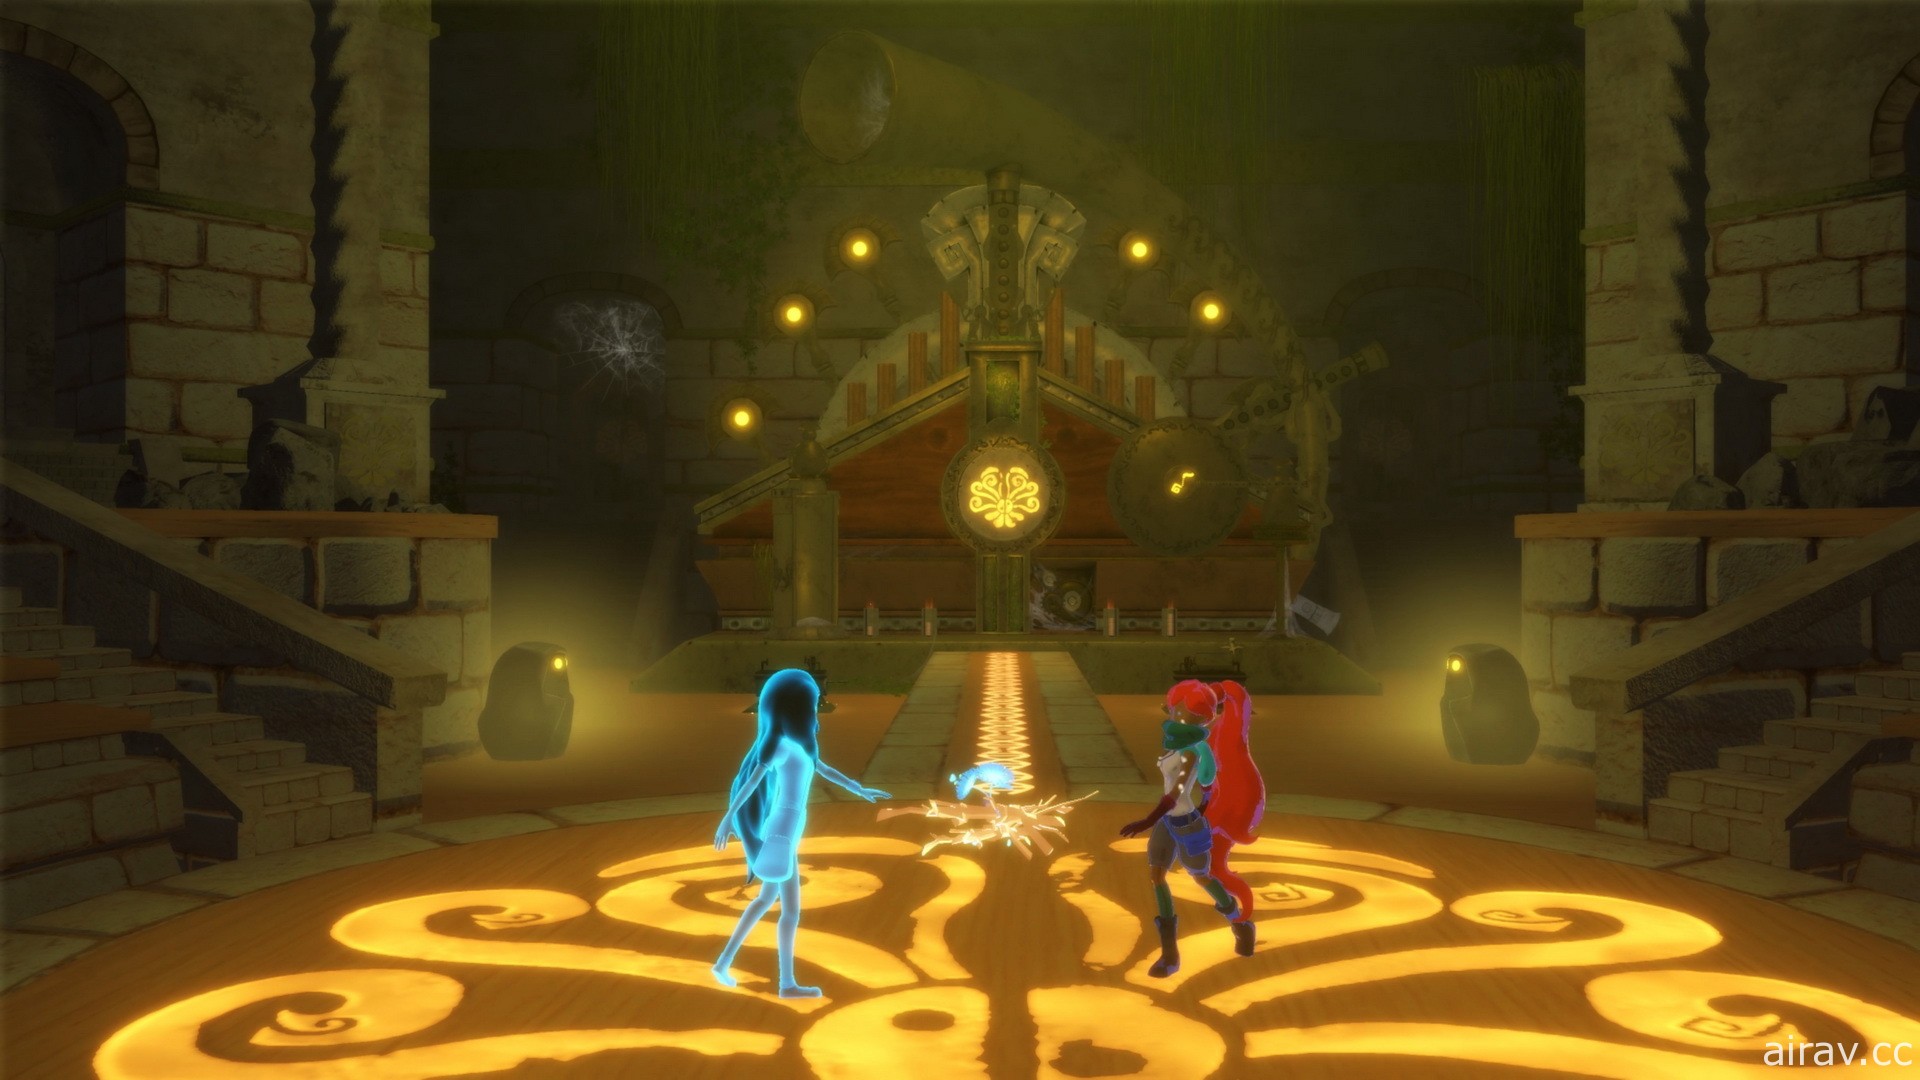 探索解謎遊戲《Aliisha》融入「音樂」類謎題 考驗兩位玩家間的默契